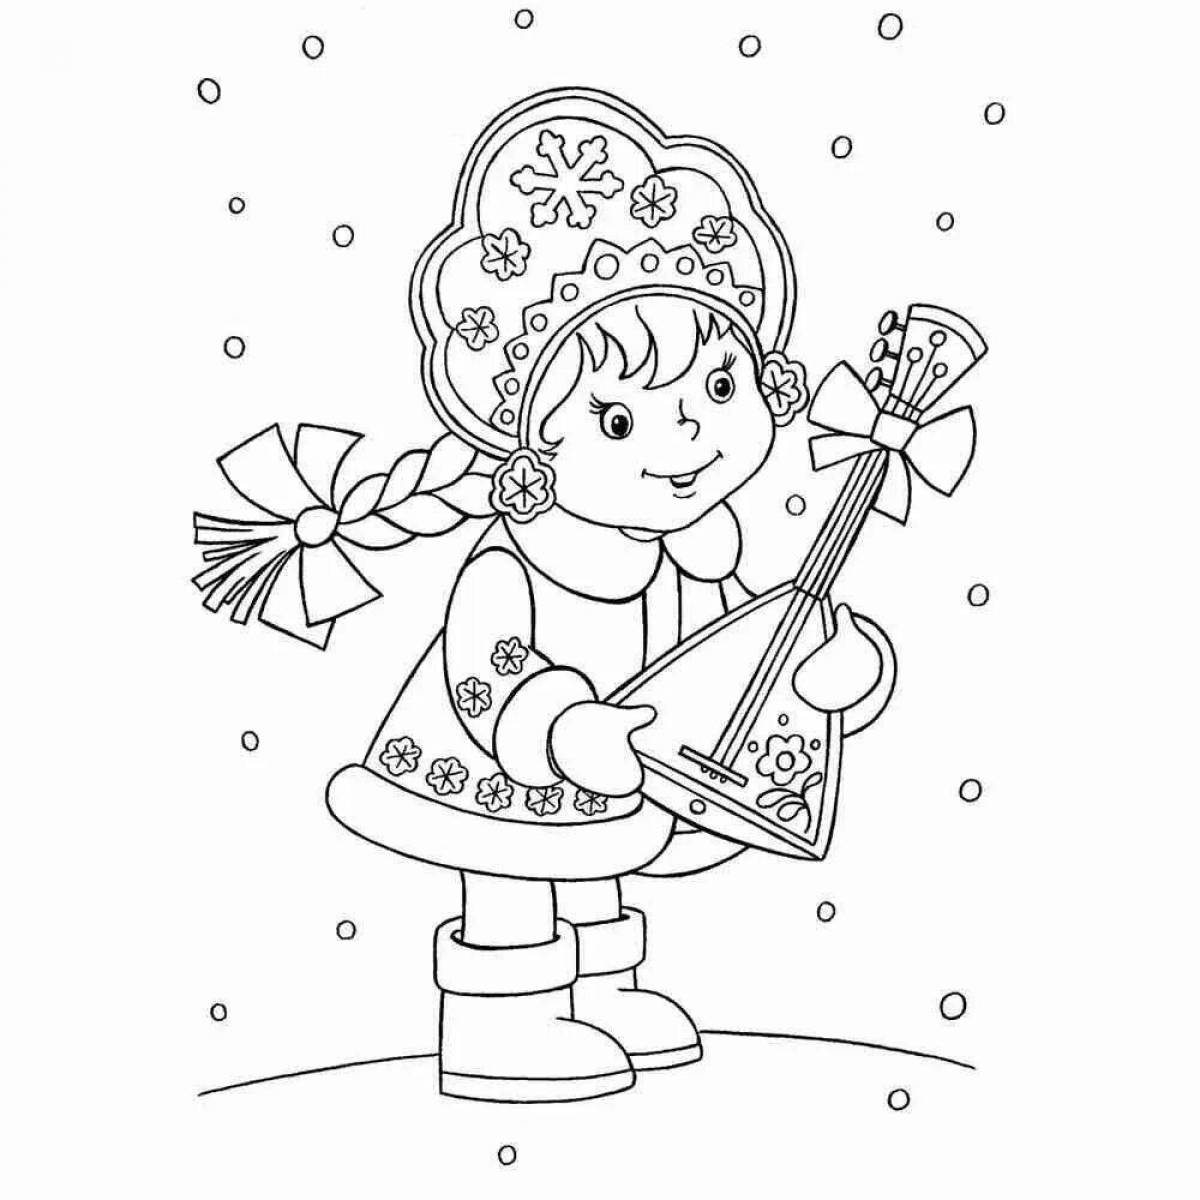 Снегурочка раскраска для детей